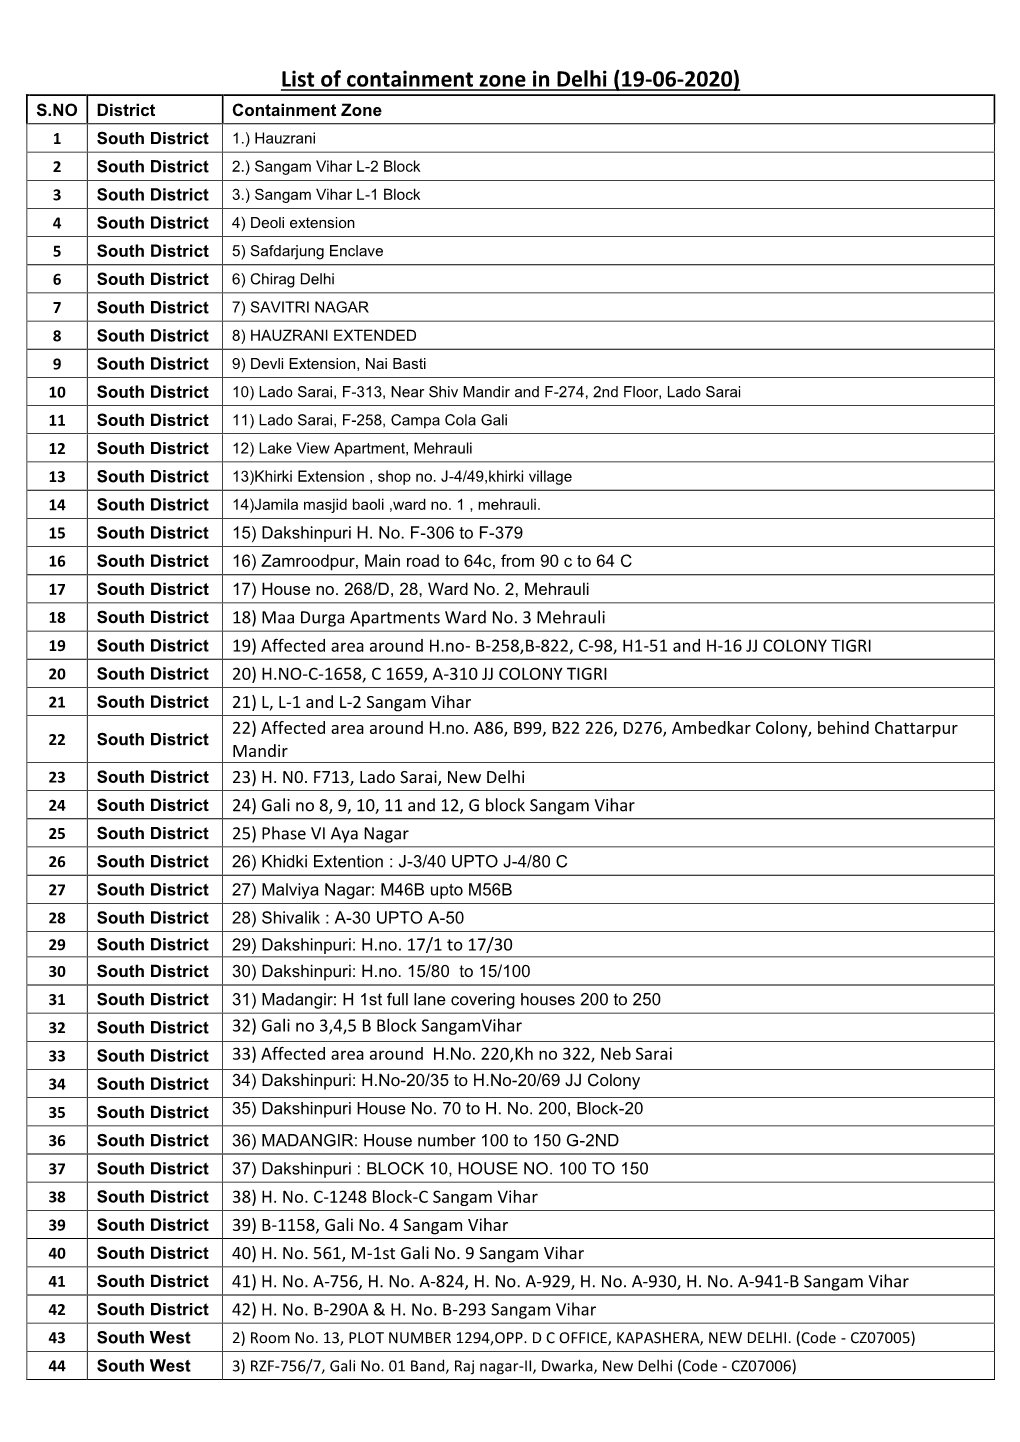 List of Containment Zone in Delhi (19-06-2020)